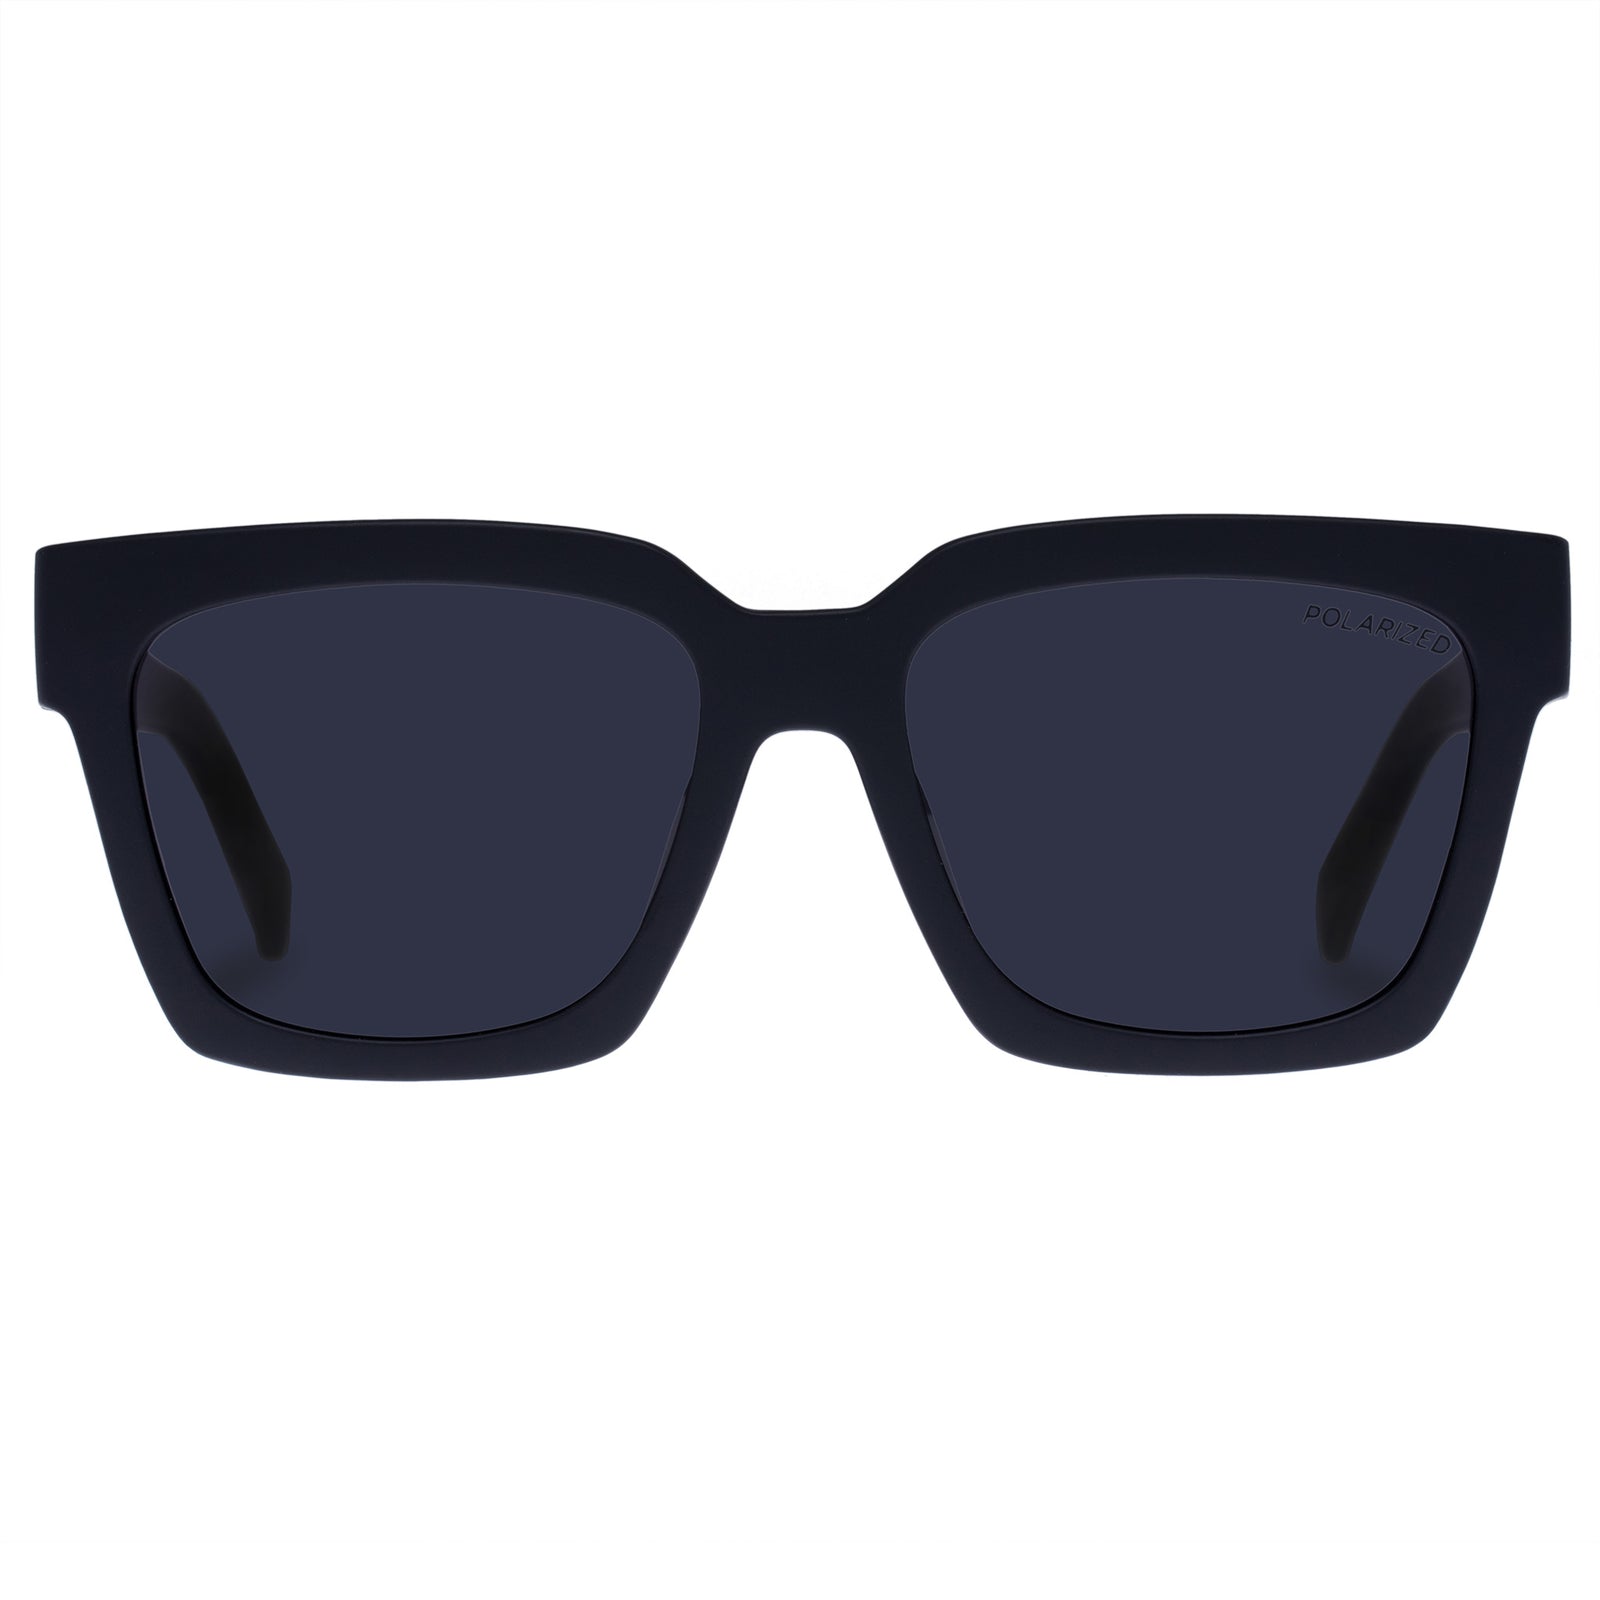 Black | Weekend Matte Sunglasses Polarized Le D-Frame Uni-Sex Specs Riot